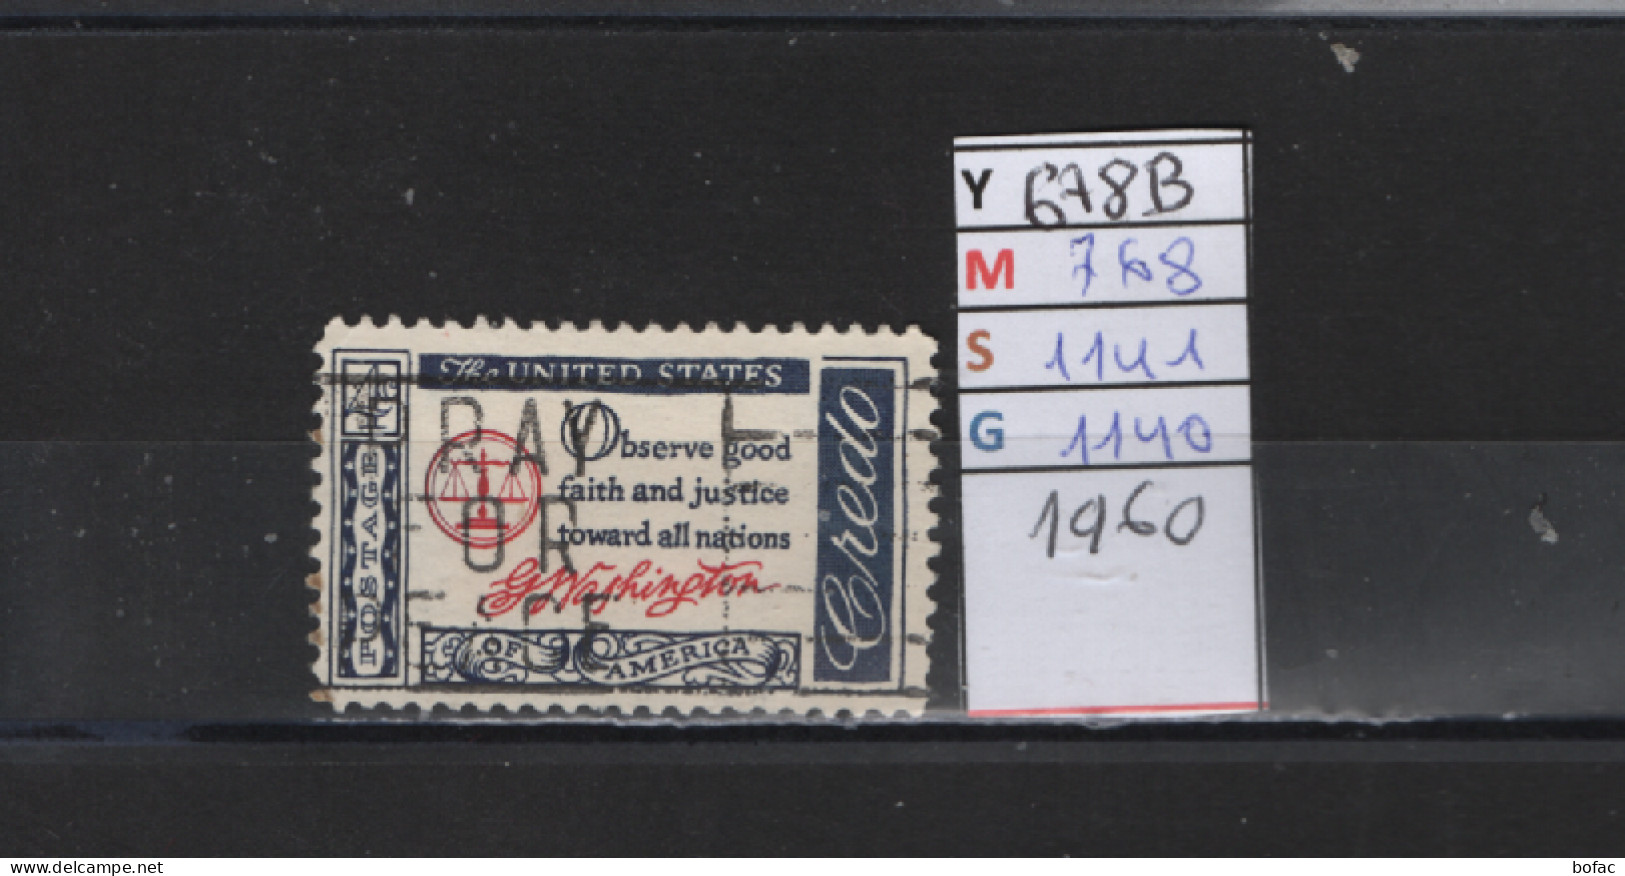 PRIX FIXE Obl  678B YT 768 MIC 1141 SCO 1140 GIB Crédo Américain 1960 1961   58A/08 - Used Stamps